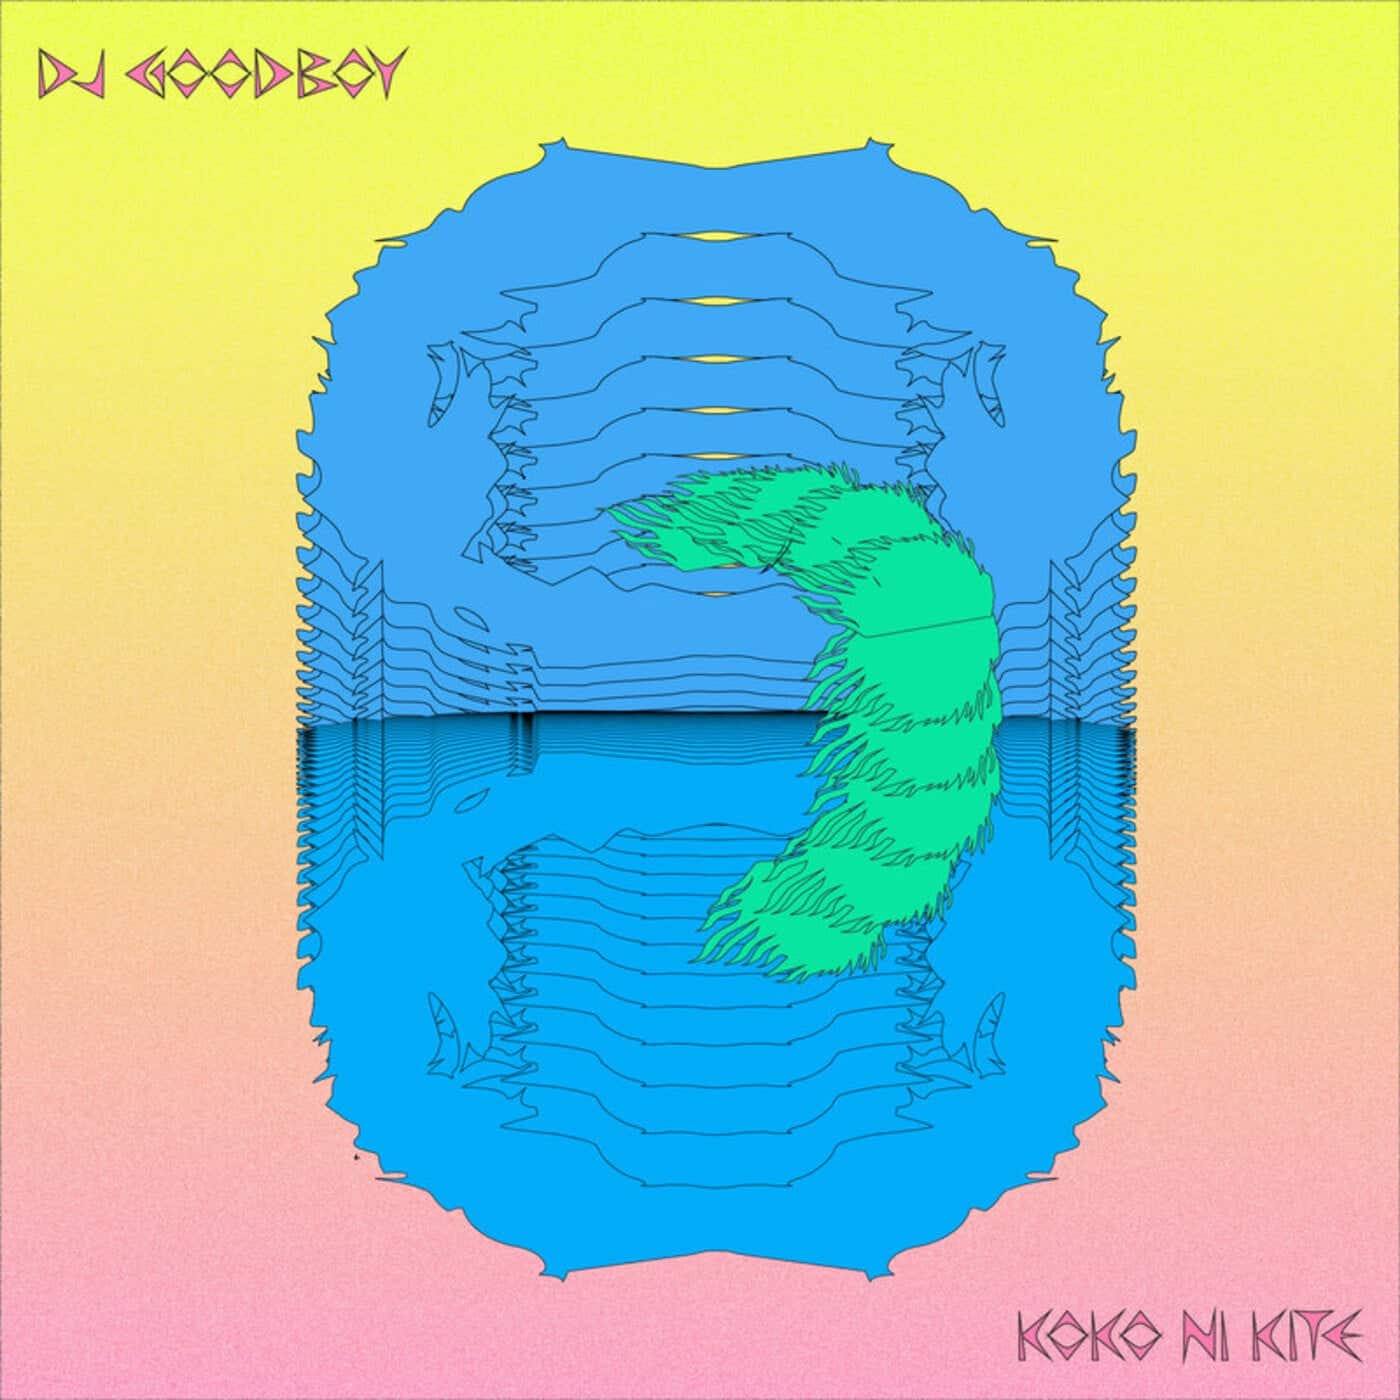 Download DJ Goodboy - Koko Ni Kite on Electrobuzz